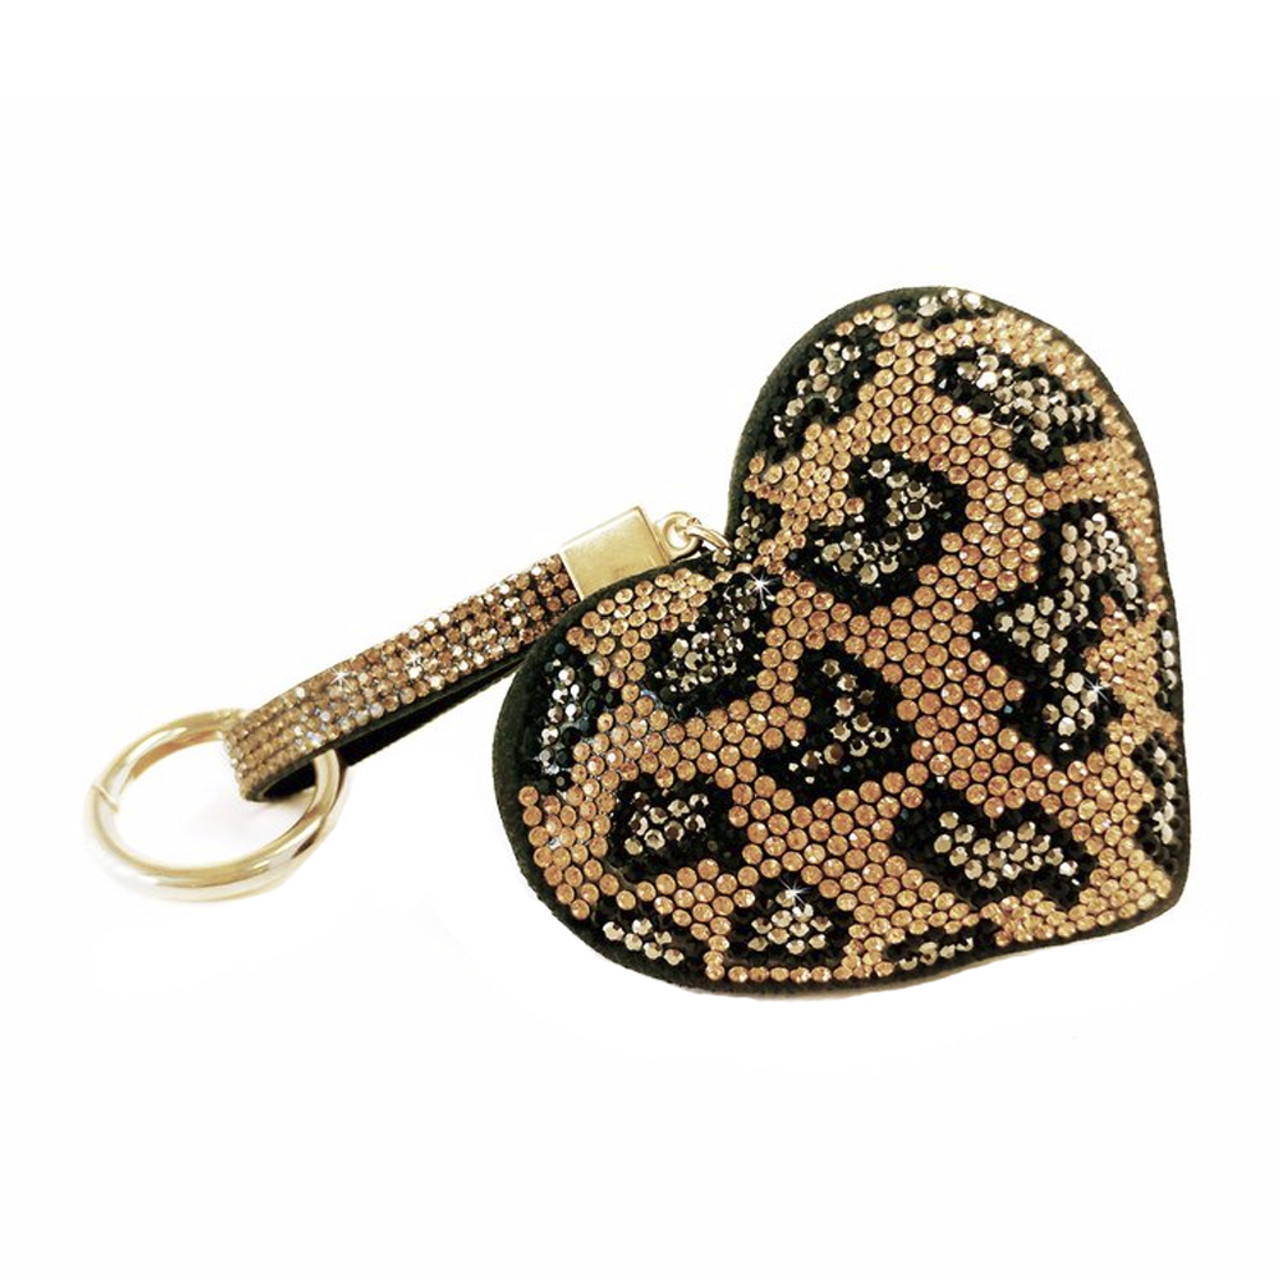 LOUIS VUITTON Heart Key Motif Bag Charm Phone Strap Pink Gold Tone